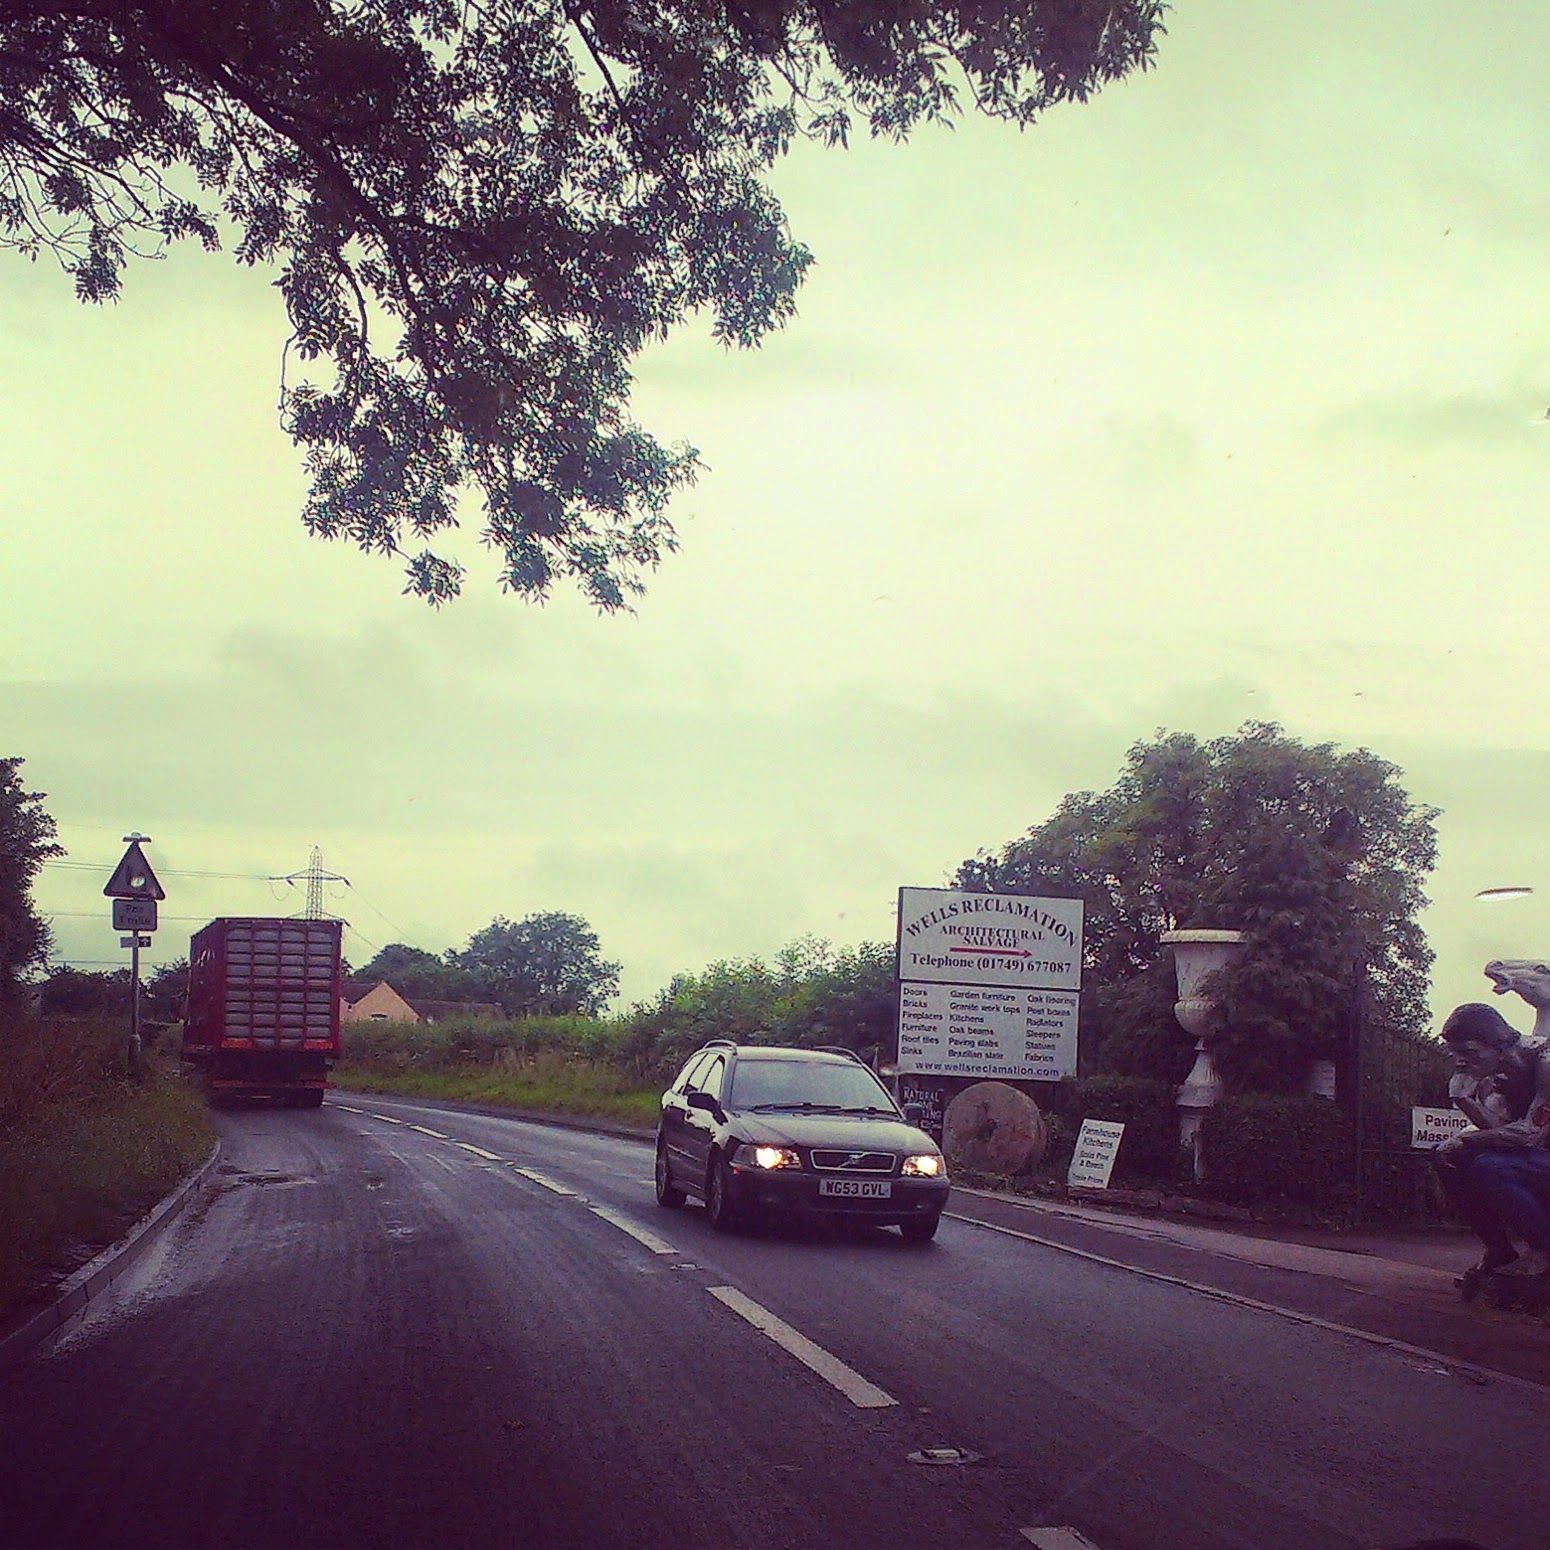 Driving through Somerset